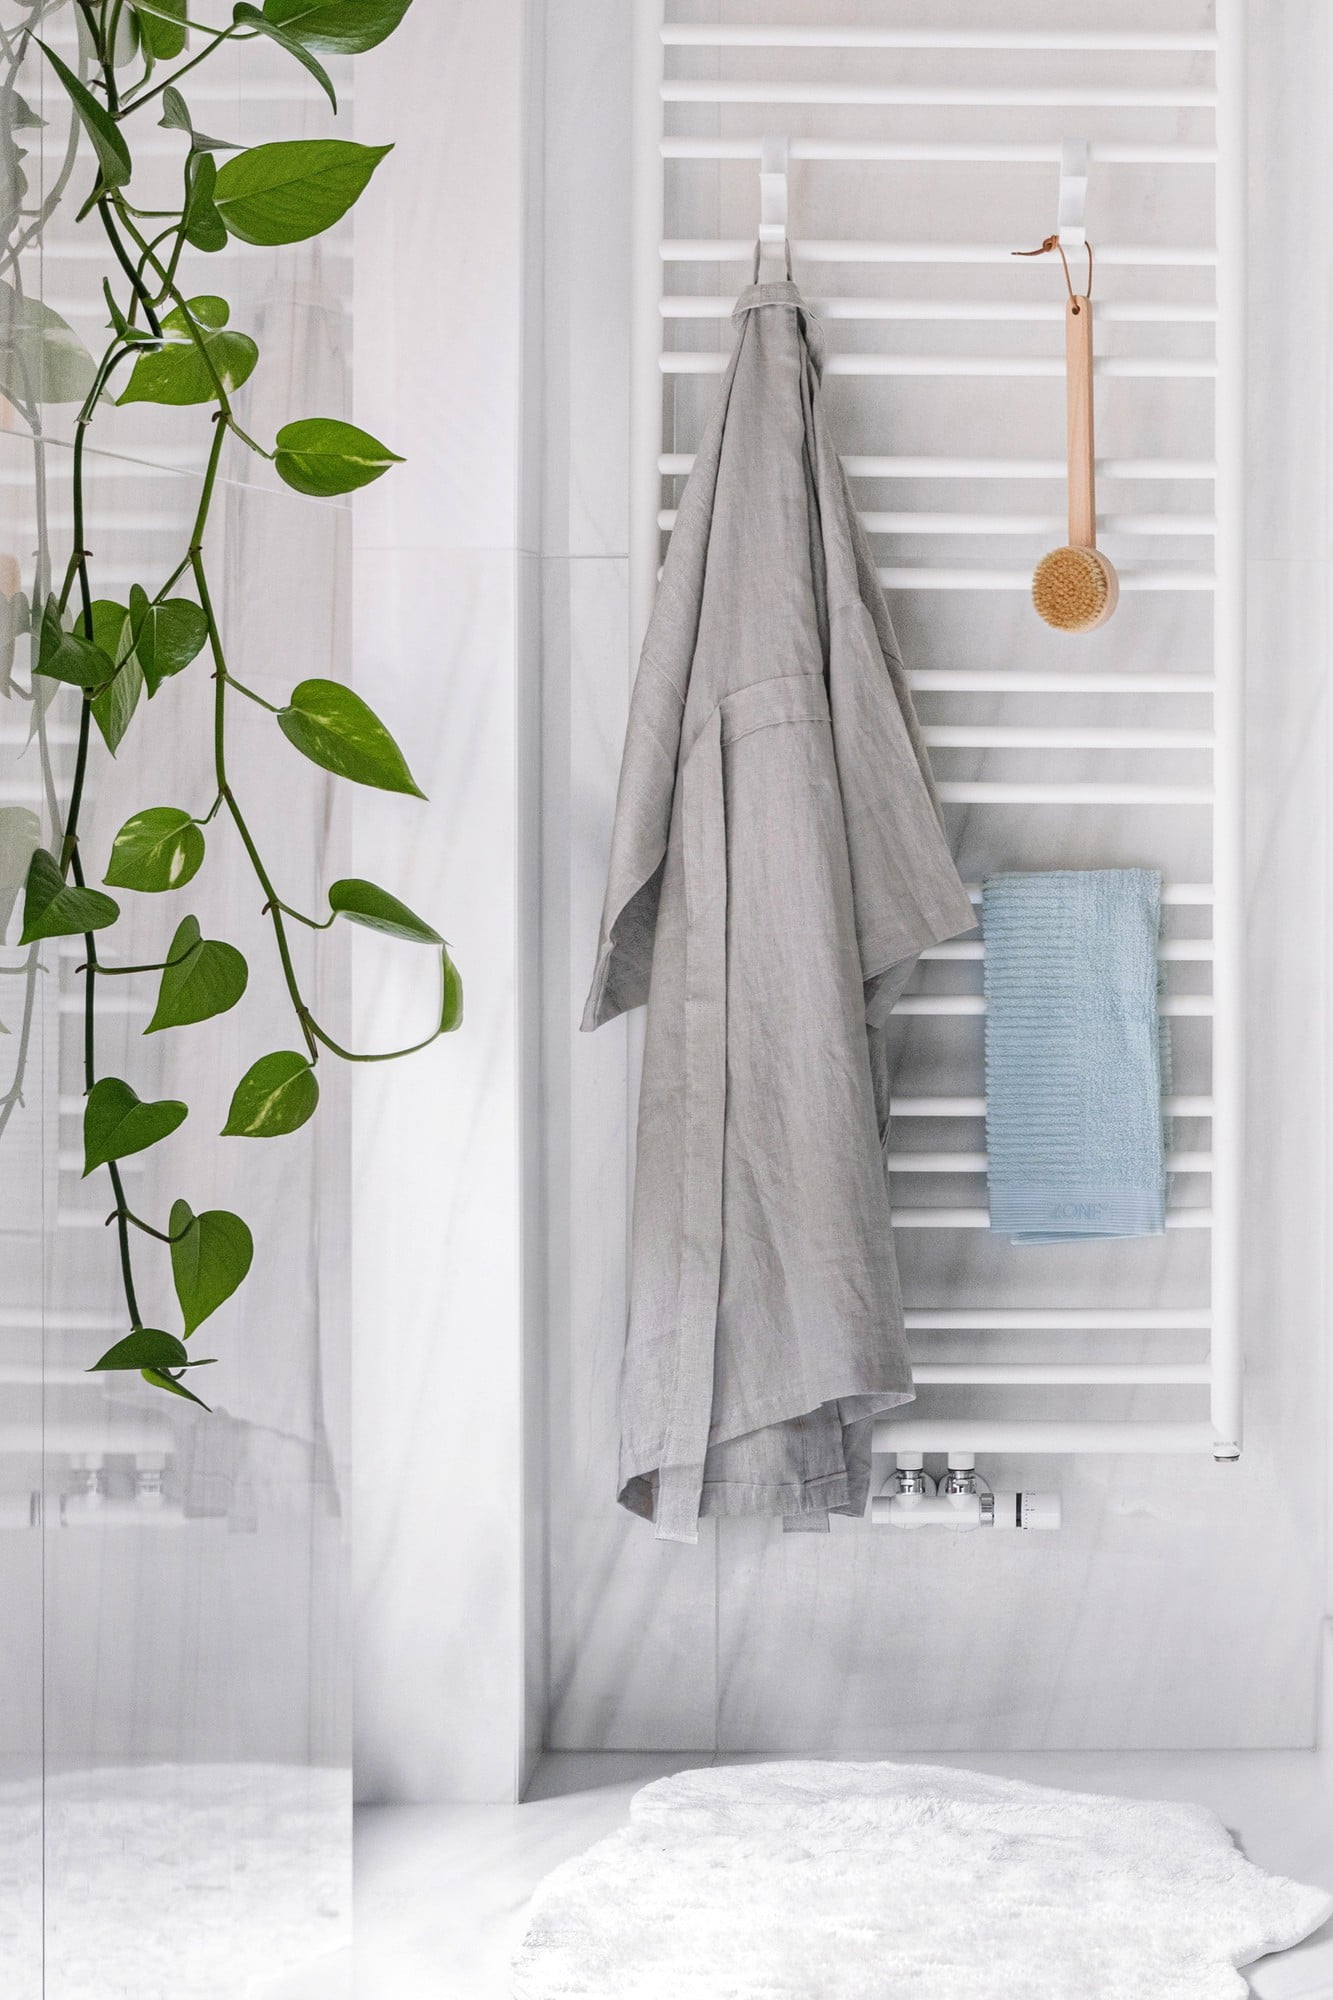  Anche in bagno non mancano i materiali naturali: lino per l'accappatoio e bambù per la spazzola.